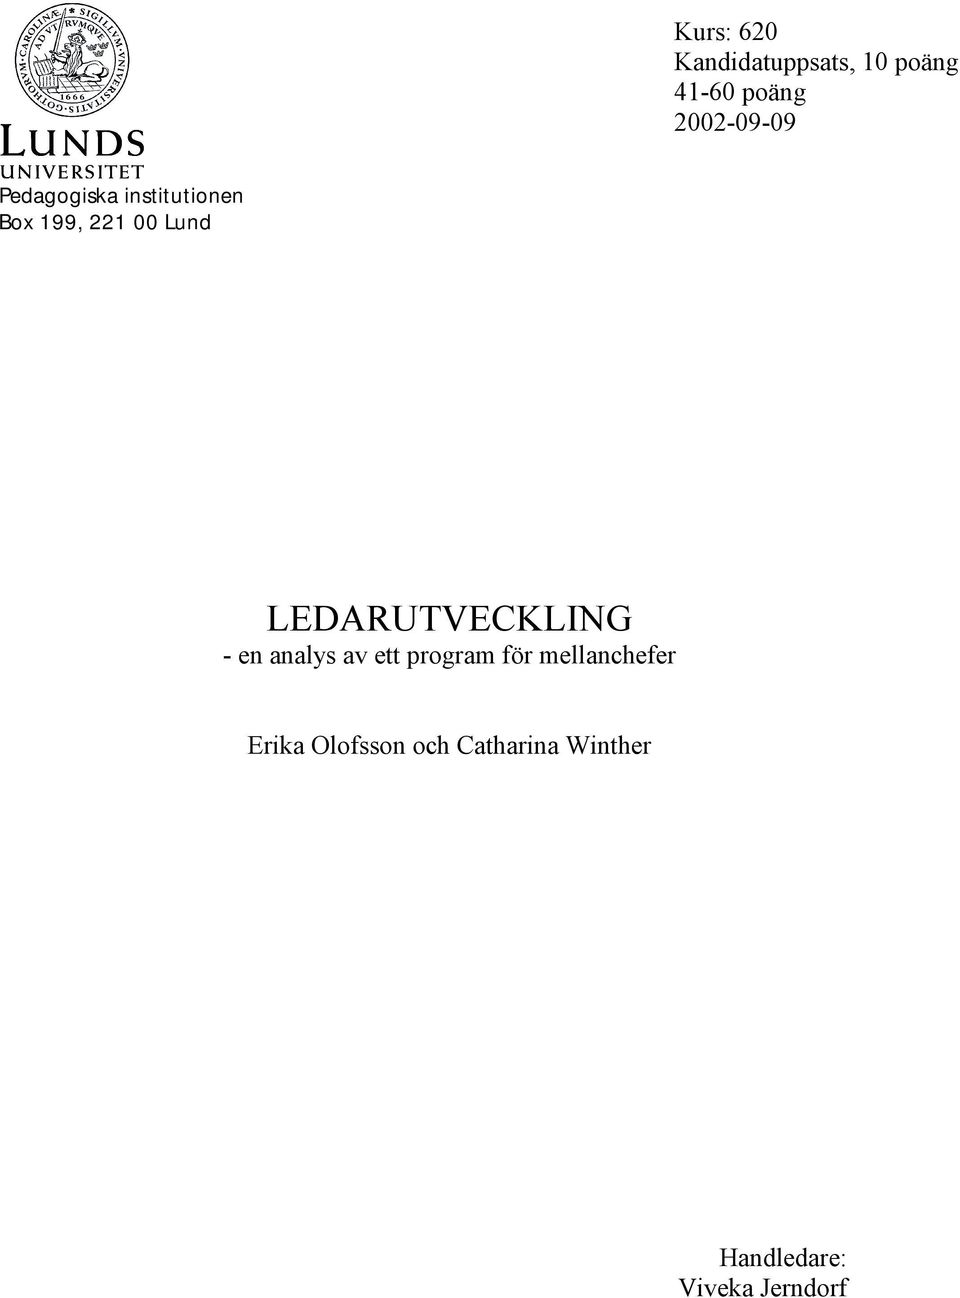 LEDARUTVECKLING - en analys av ett program för